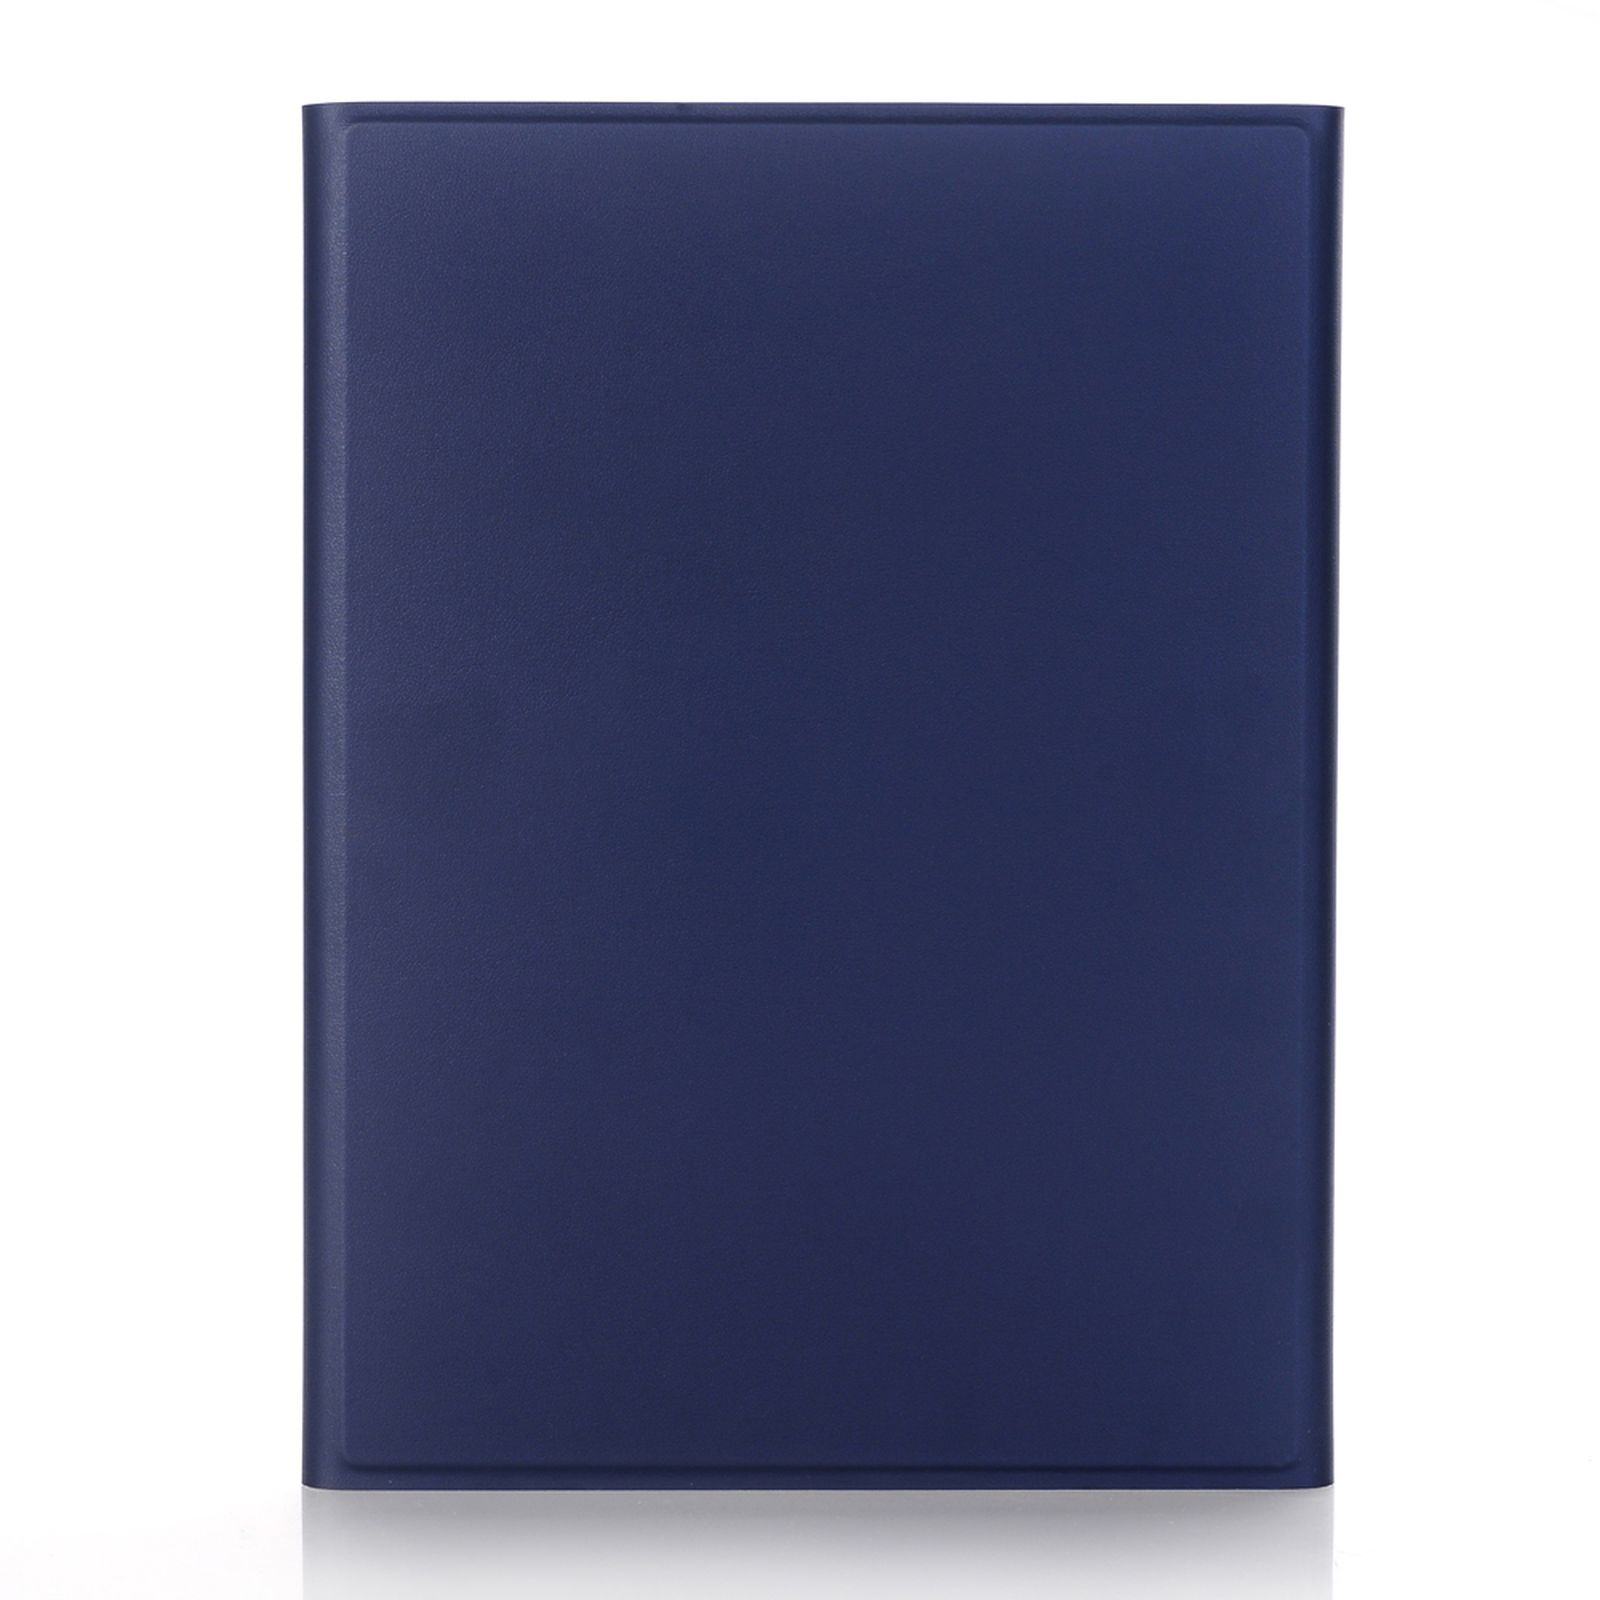 2in1 10. Hülle Gen Schutzhülle 2022 iPad 10.9 Zoll Apple LOBWERK Blau für Kunststoff, Set Bookcover Bluetoothfür